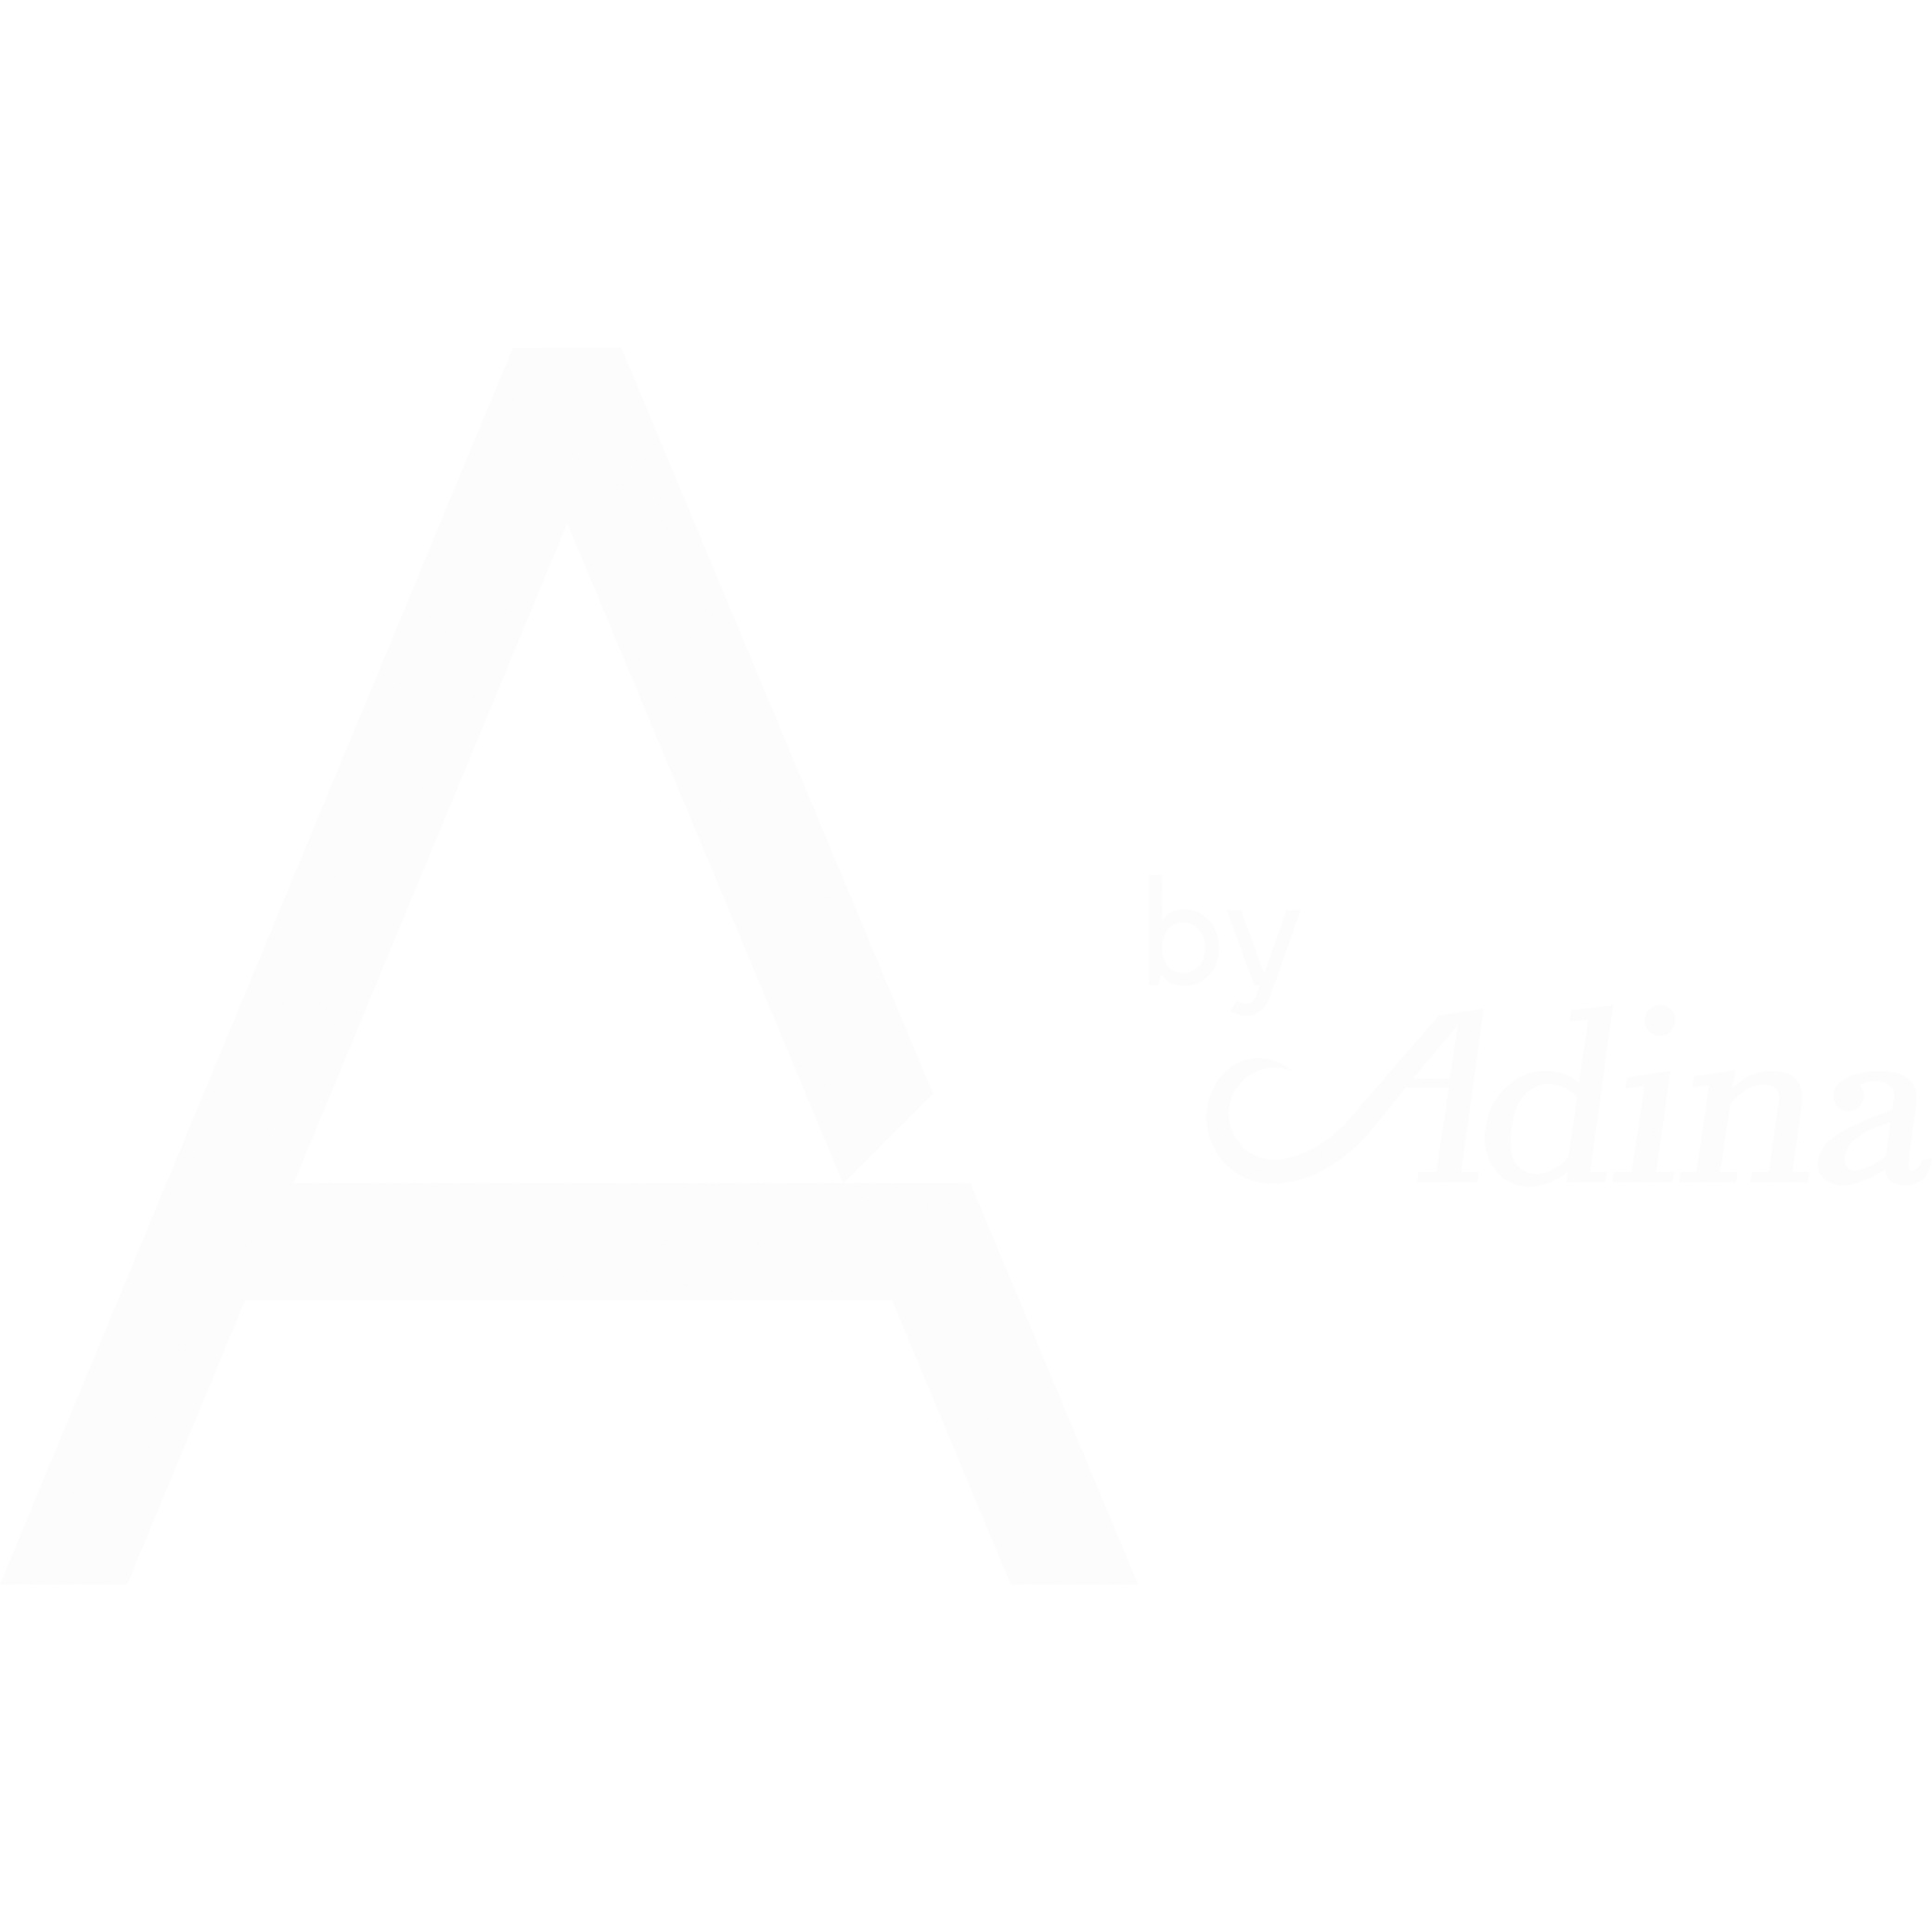 A-by-Adina-Lockup-Pine_White_1x1